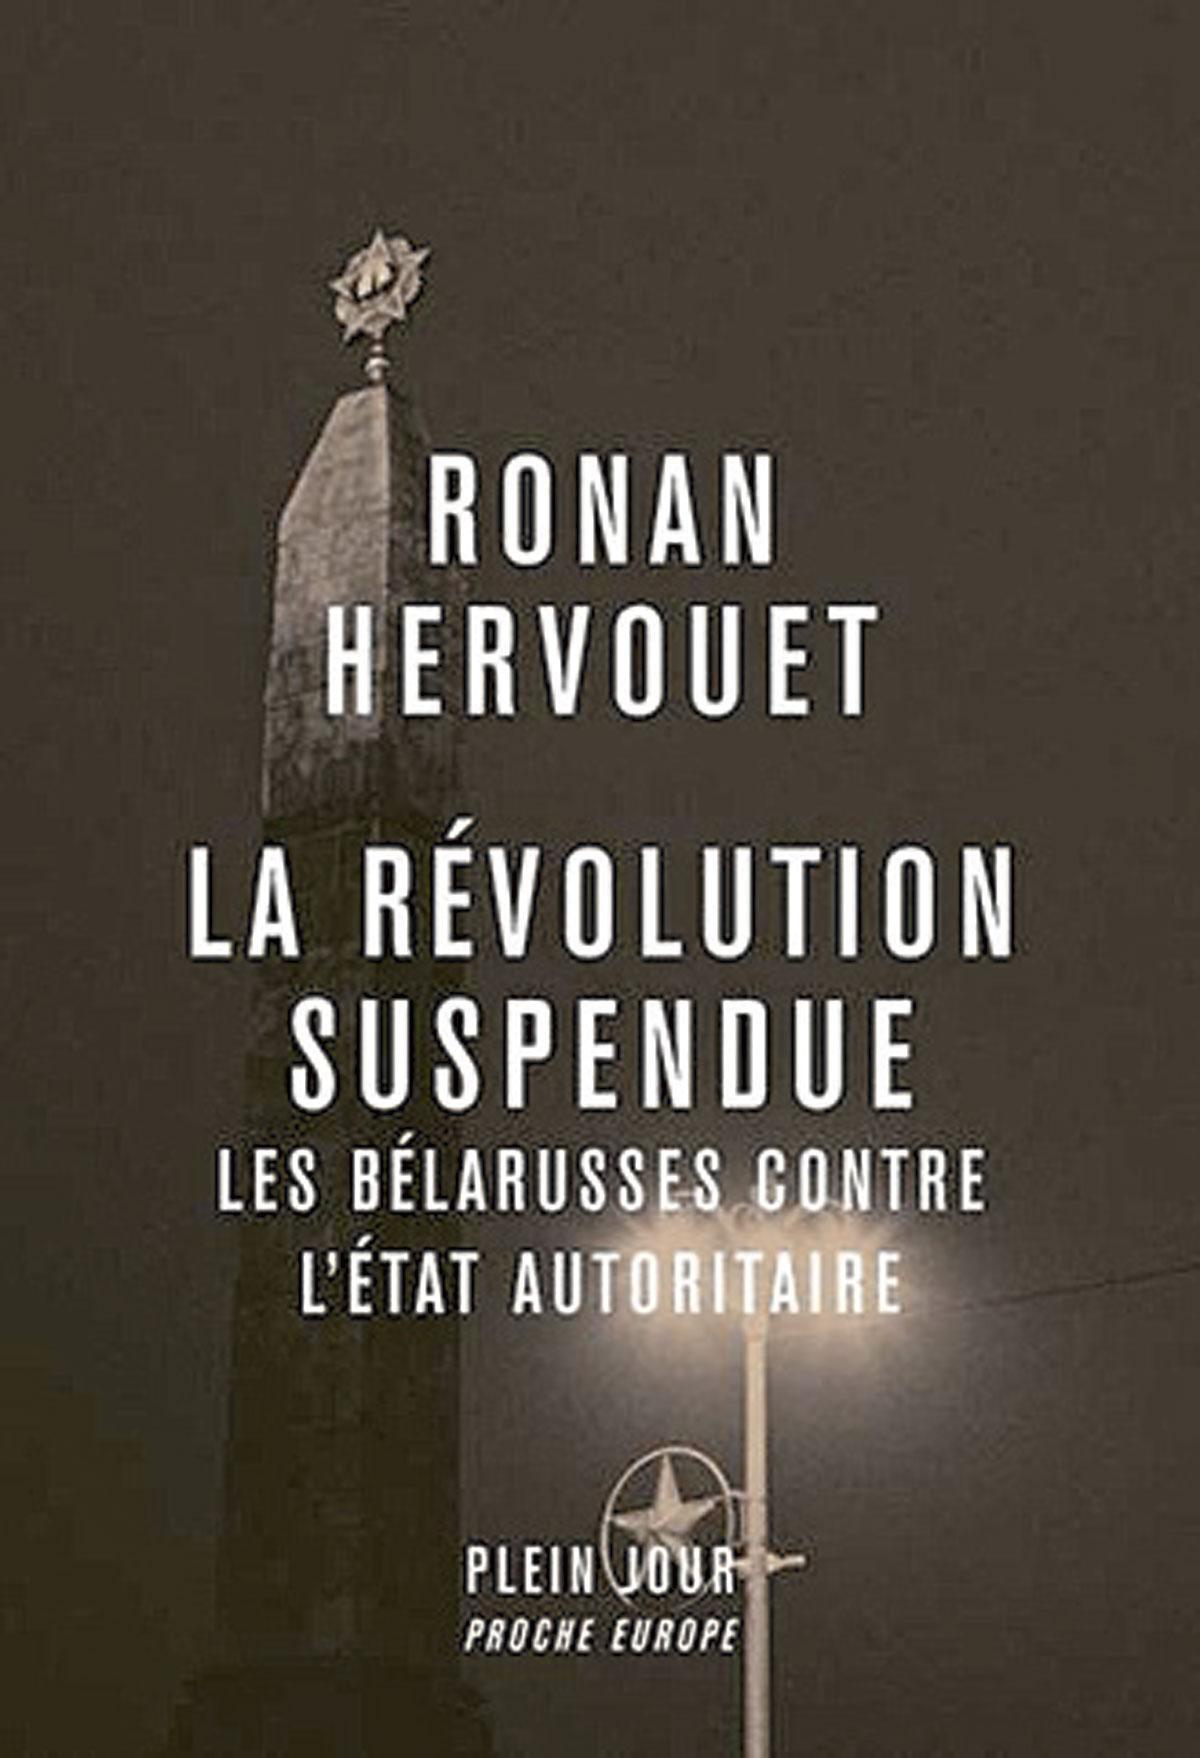 (1) La Révolution suspendue. Les Bélarusses contre l’Etat autoritaire, par Ronan Hervouet, Plein jour, 346 p.